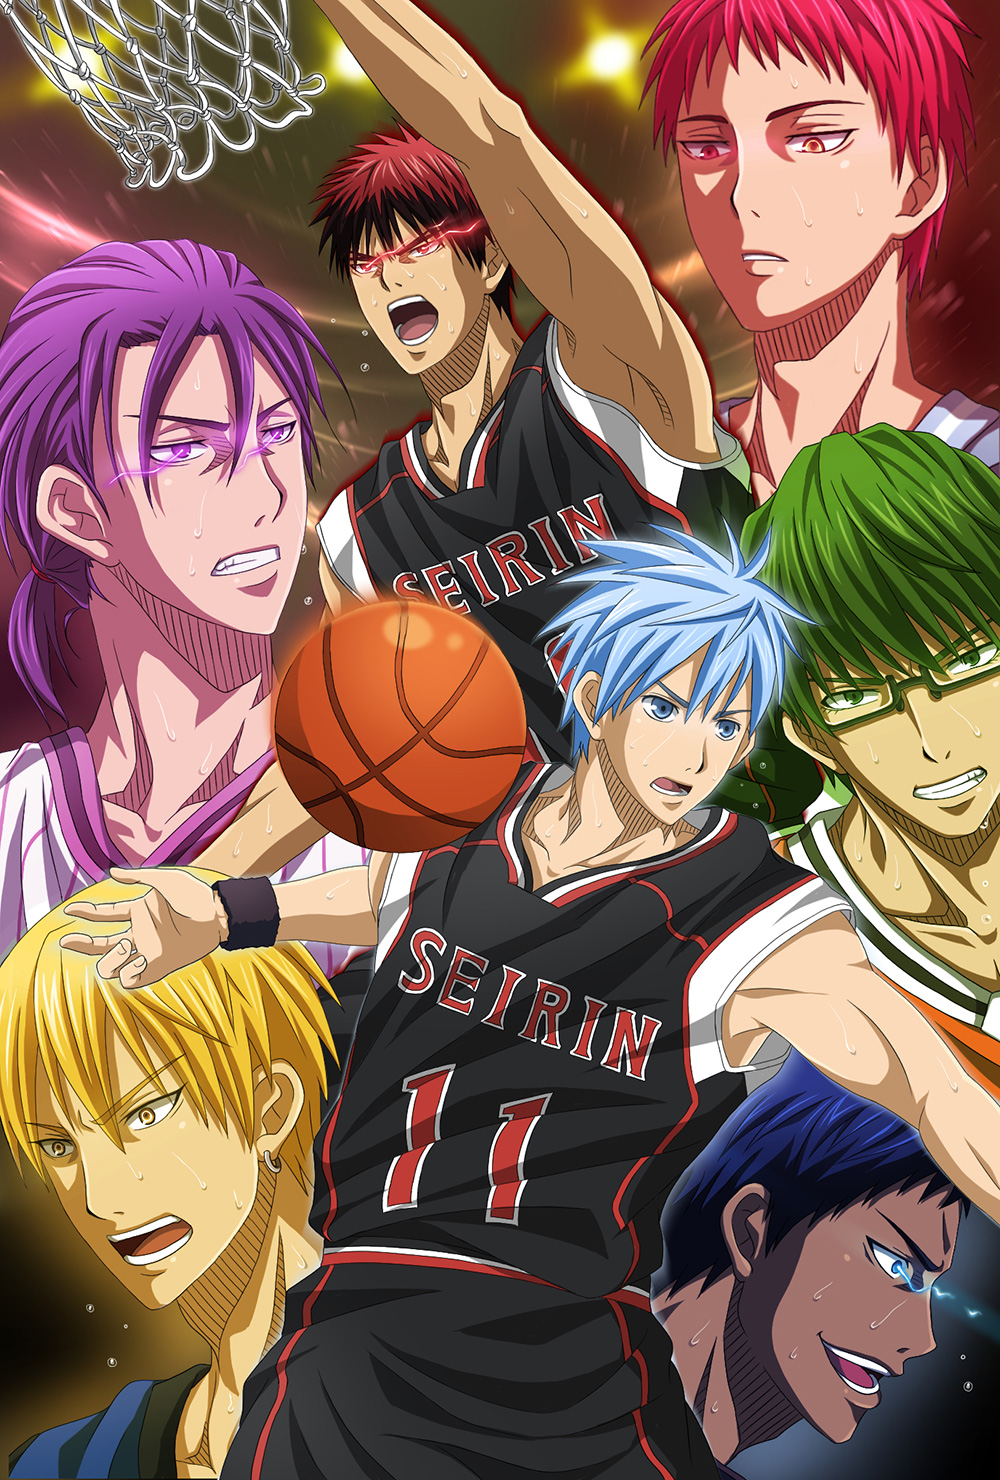 Kuroko's Basketball Anime Film Announced - Otaku Tale